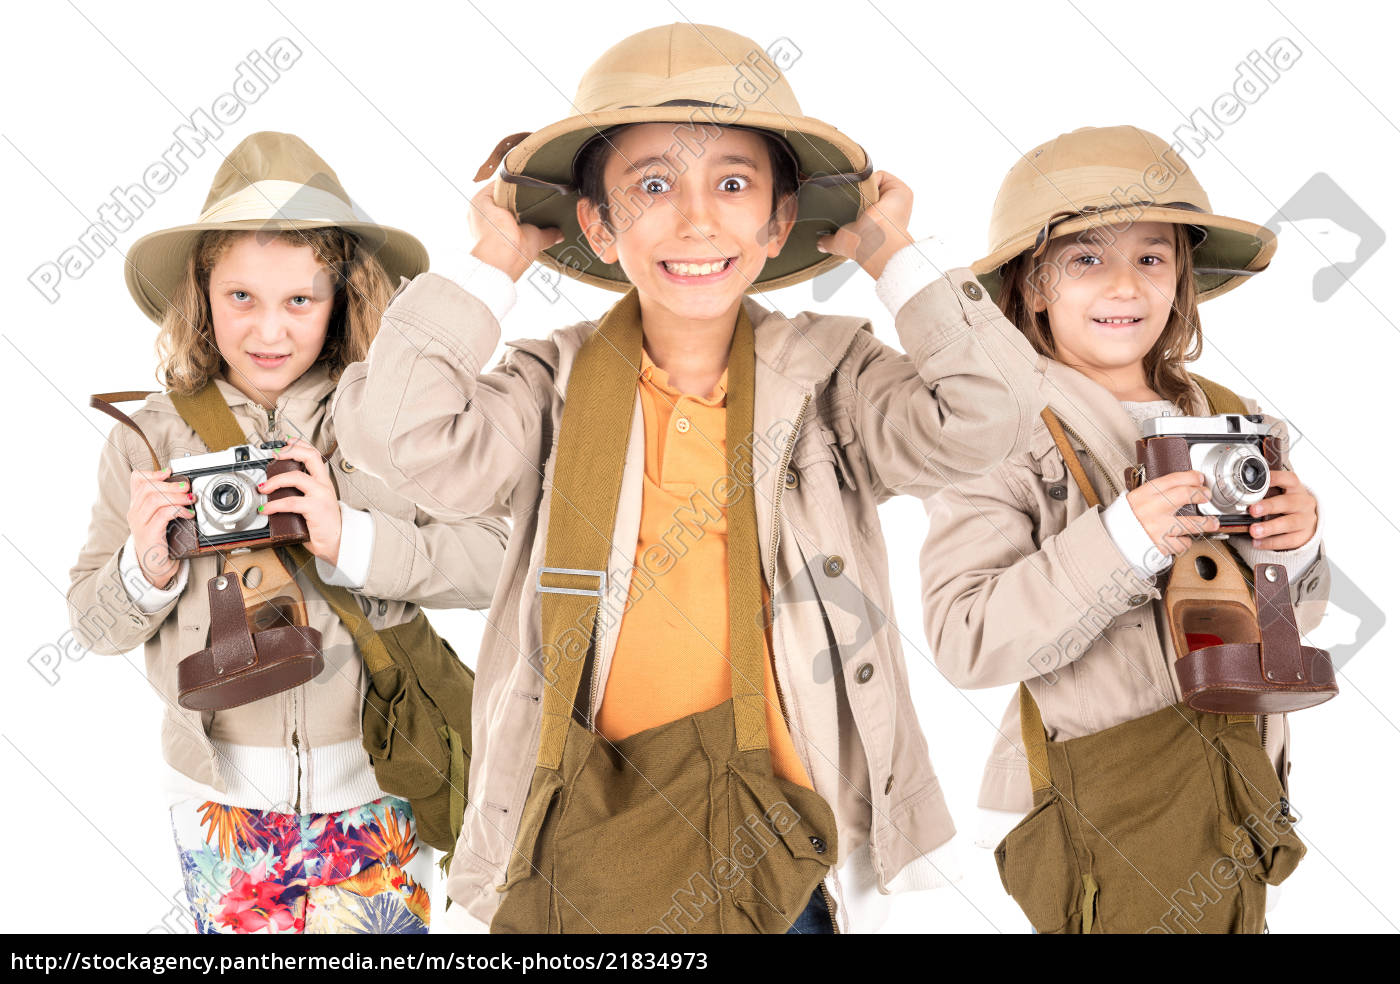 Panter Undertrykke velgørenhed Børn i safari tøj - Royalty Free Image #21834973 | PantherMedia Billedbureau